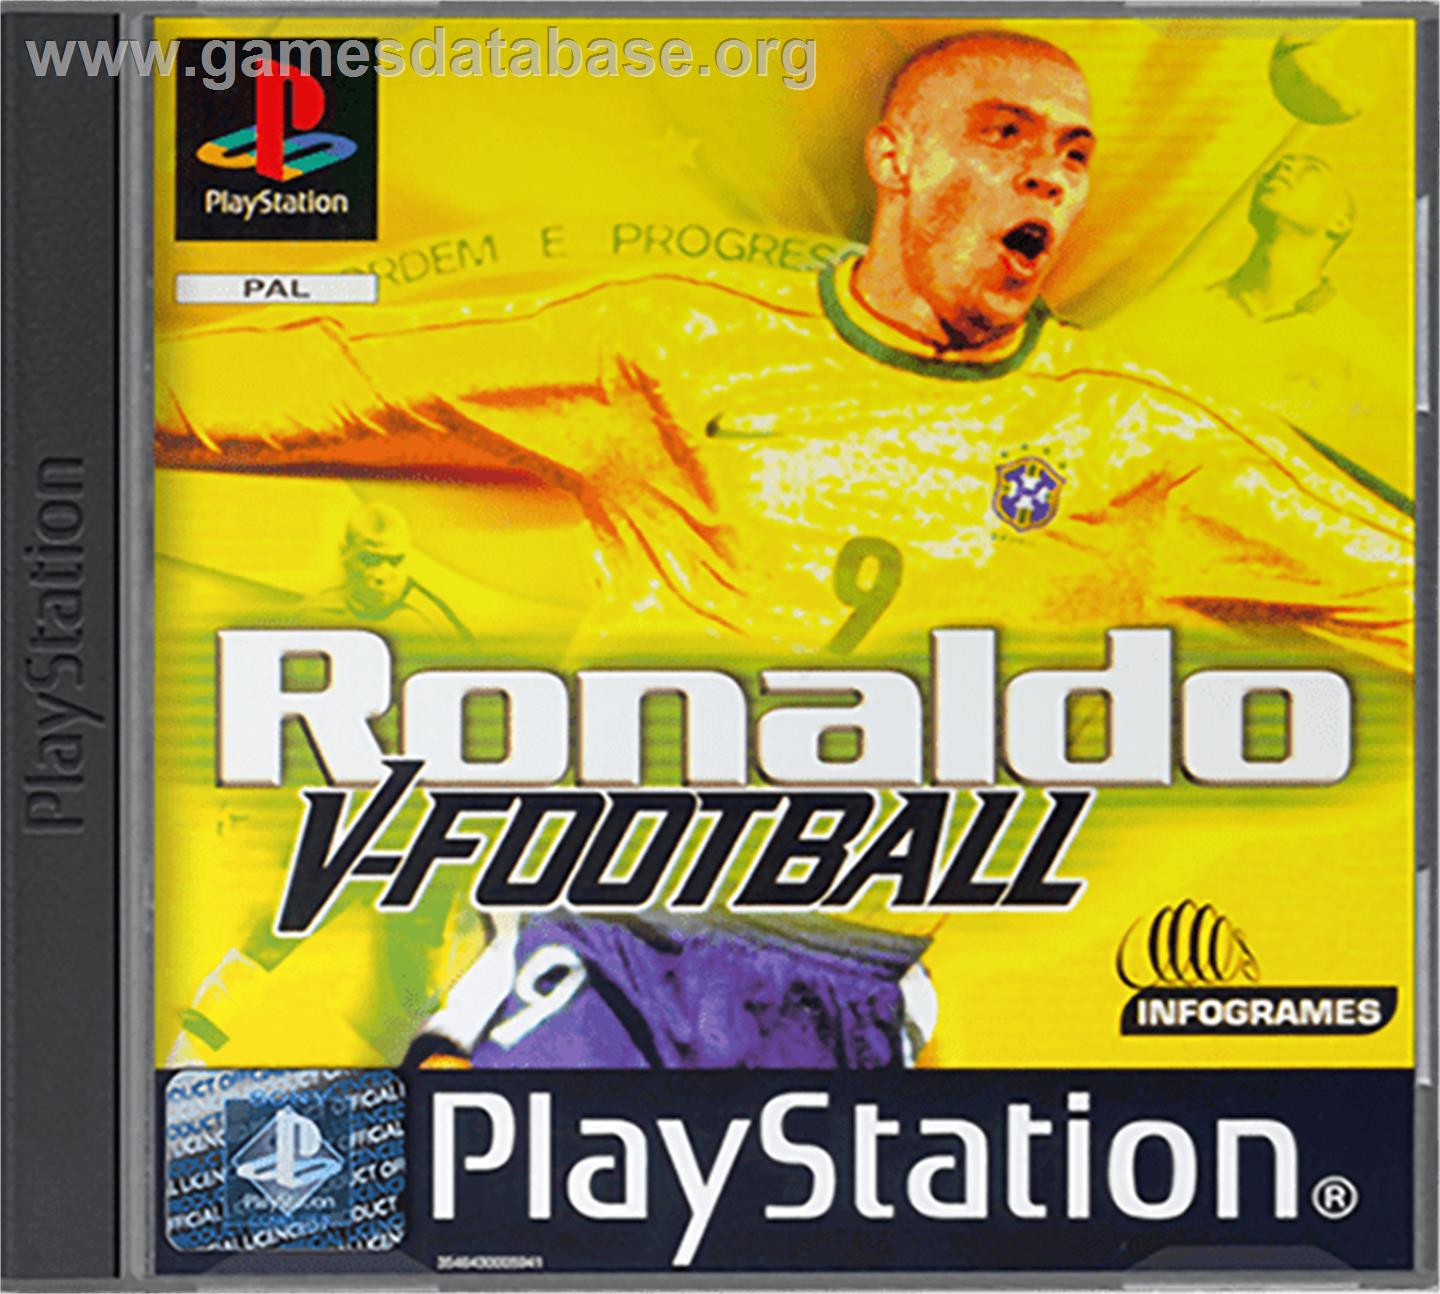 Ronaldo V-Football - Sony Playstation - Artwork - Box